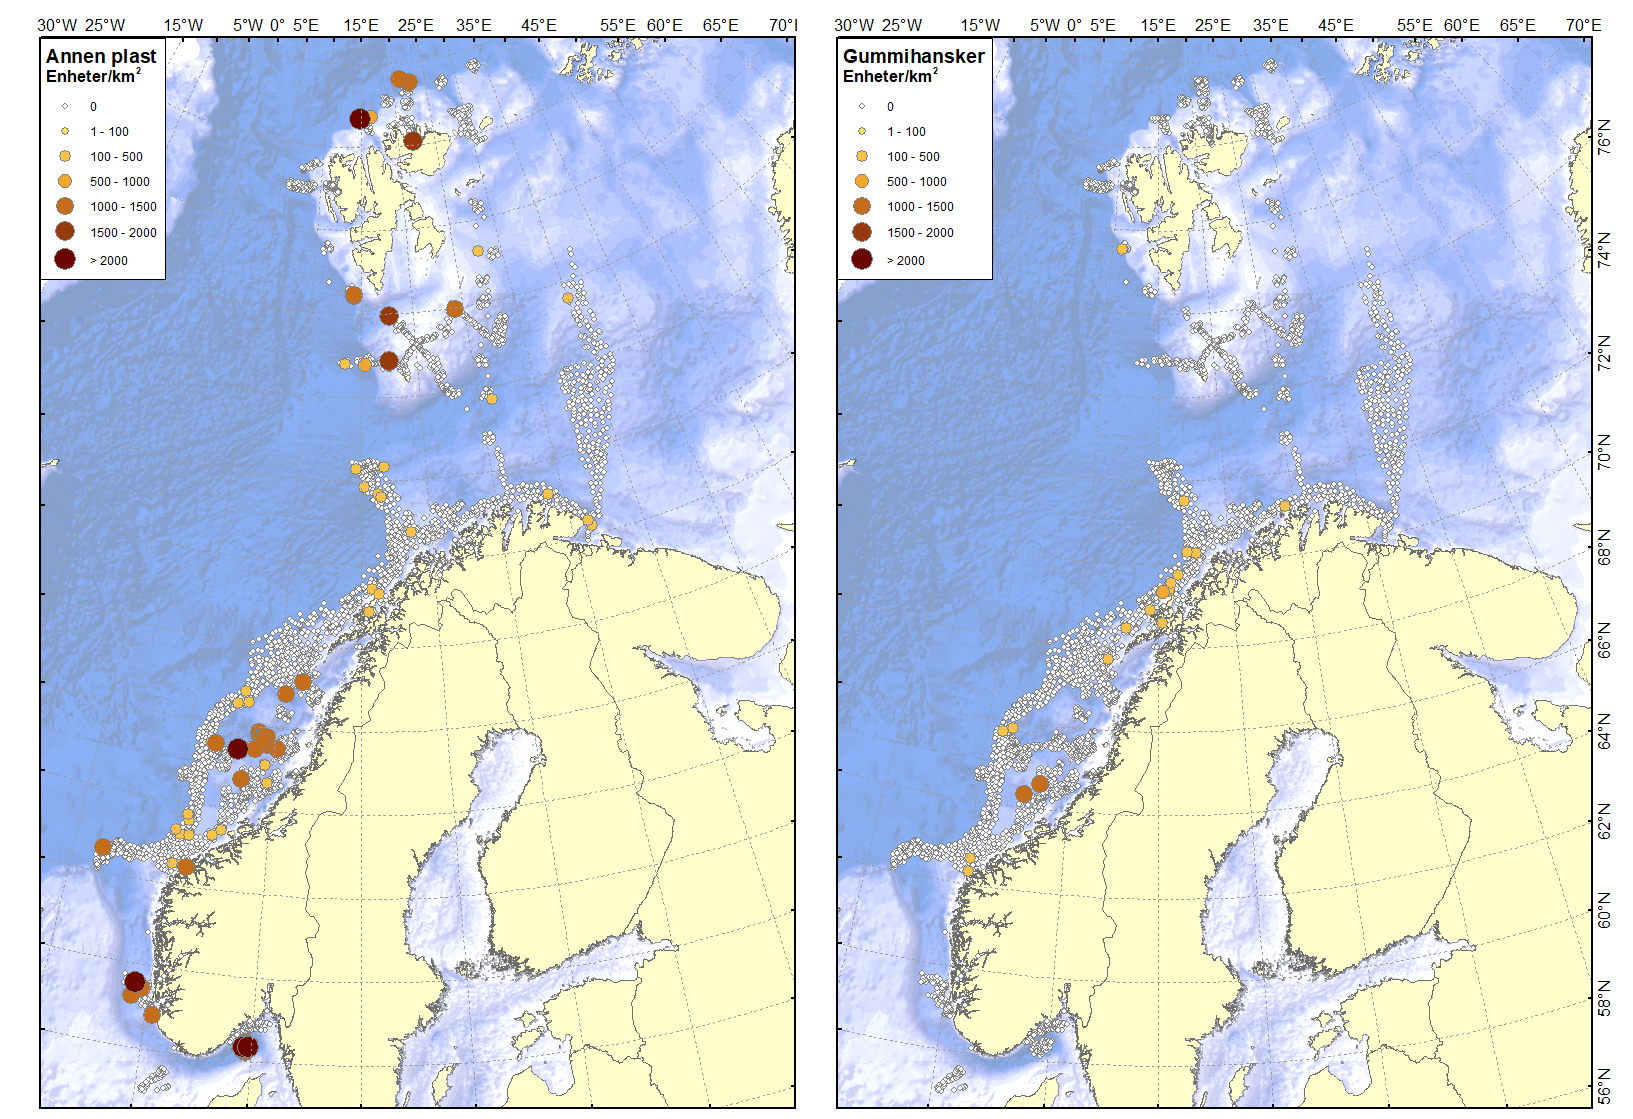 To kart over norskekysten med punkt som markerer hhv plastfunn og funn av gummihansker.